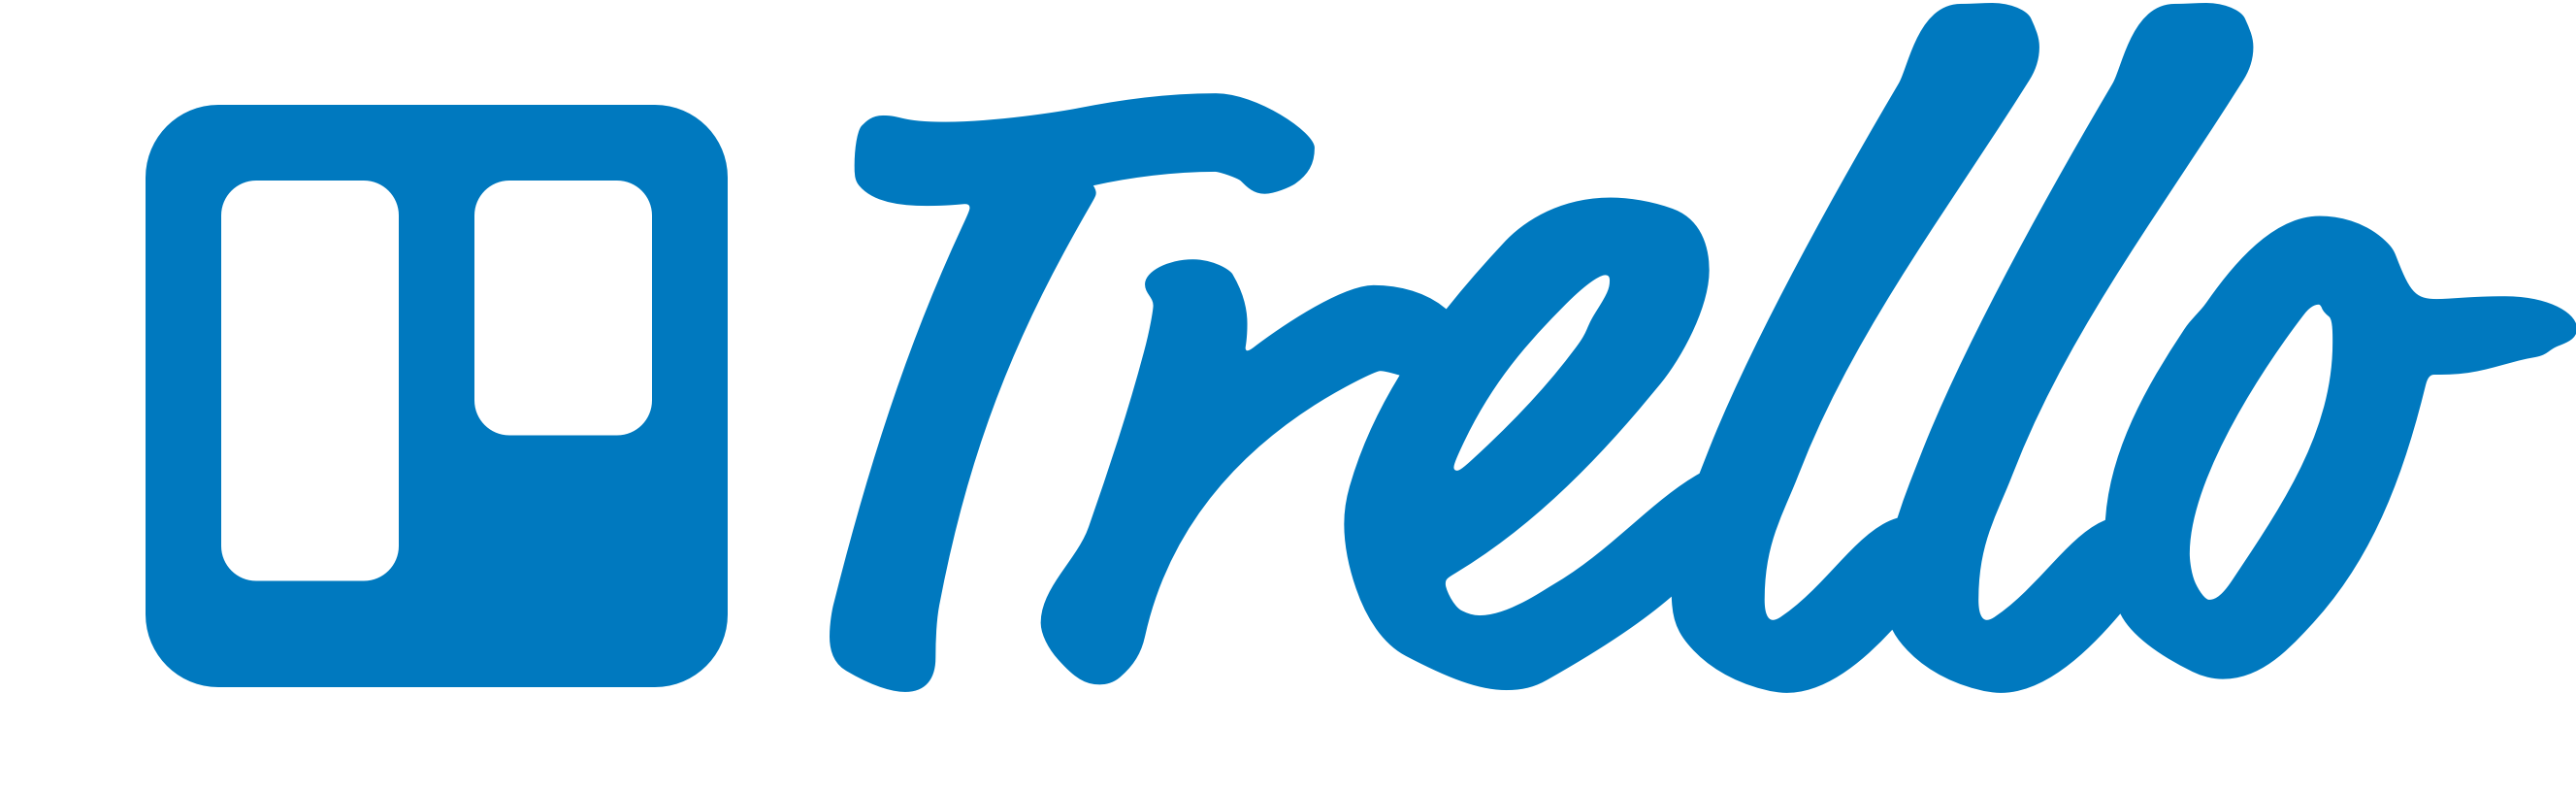 trello-logo-blue (1)-2